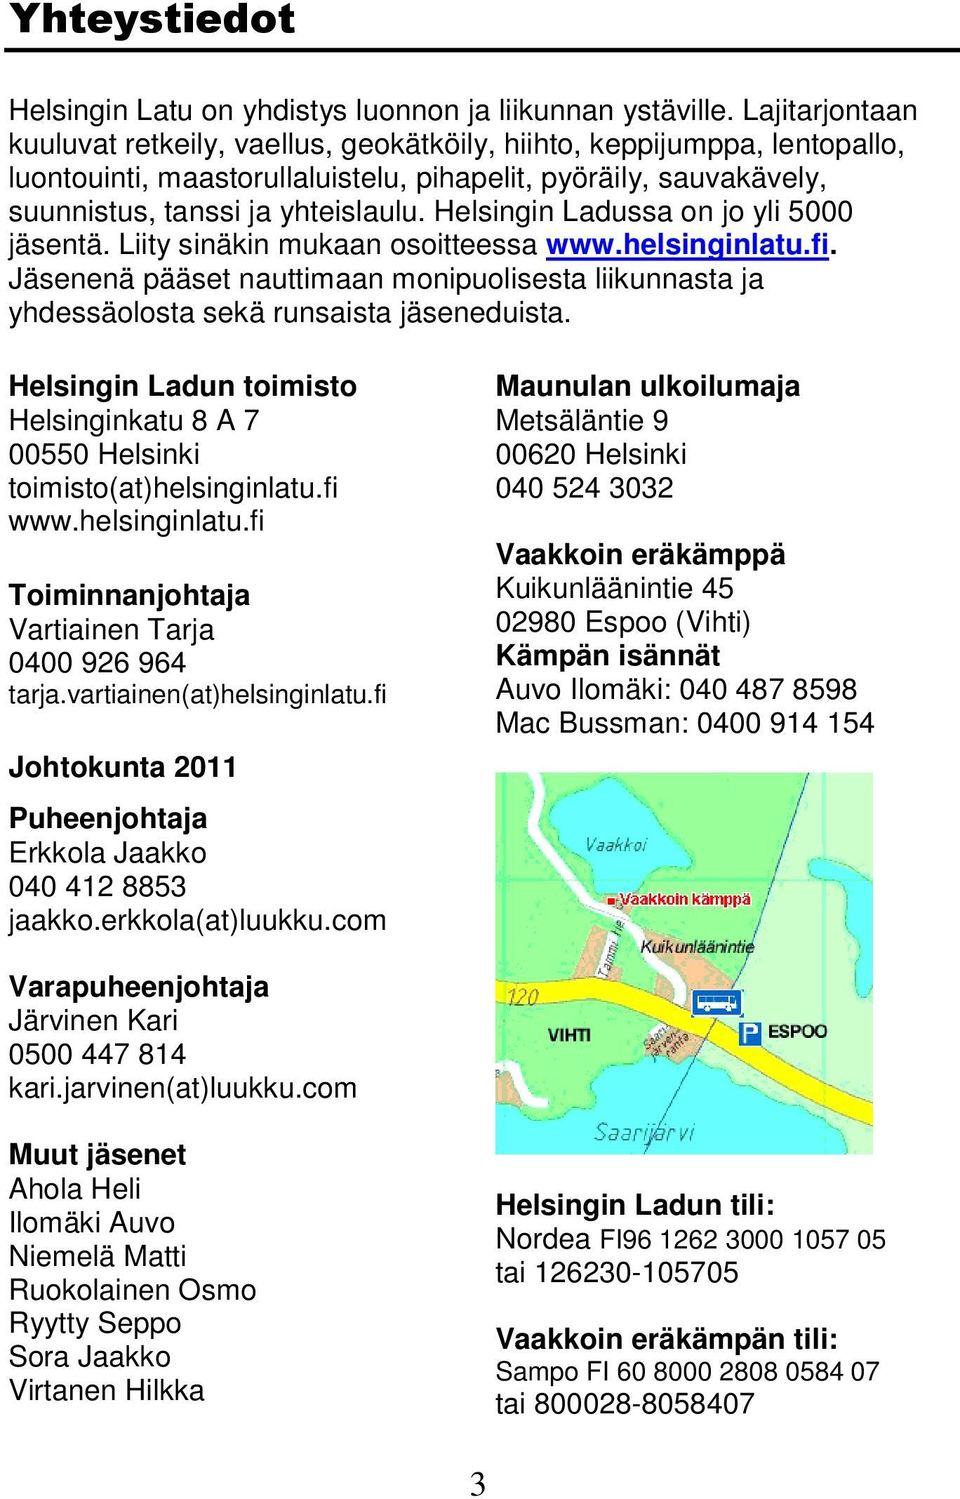 Helsingin Ladussa on jo yli 5000 jäsentä. Liity sinäkin mukaan osoitteessa www.helsinginlatu.fi. Jäsenenä pääset nauttimaan monipuolisesta liikunnasta ja yhdessäolosta sekä runsaista jäseneduista.